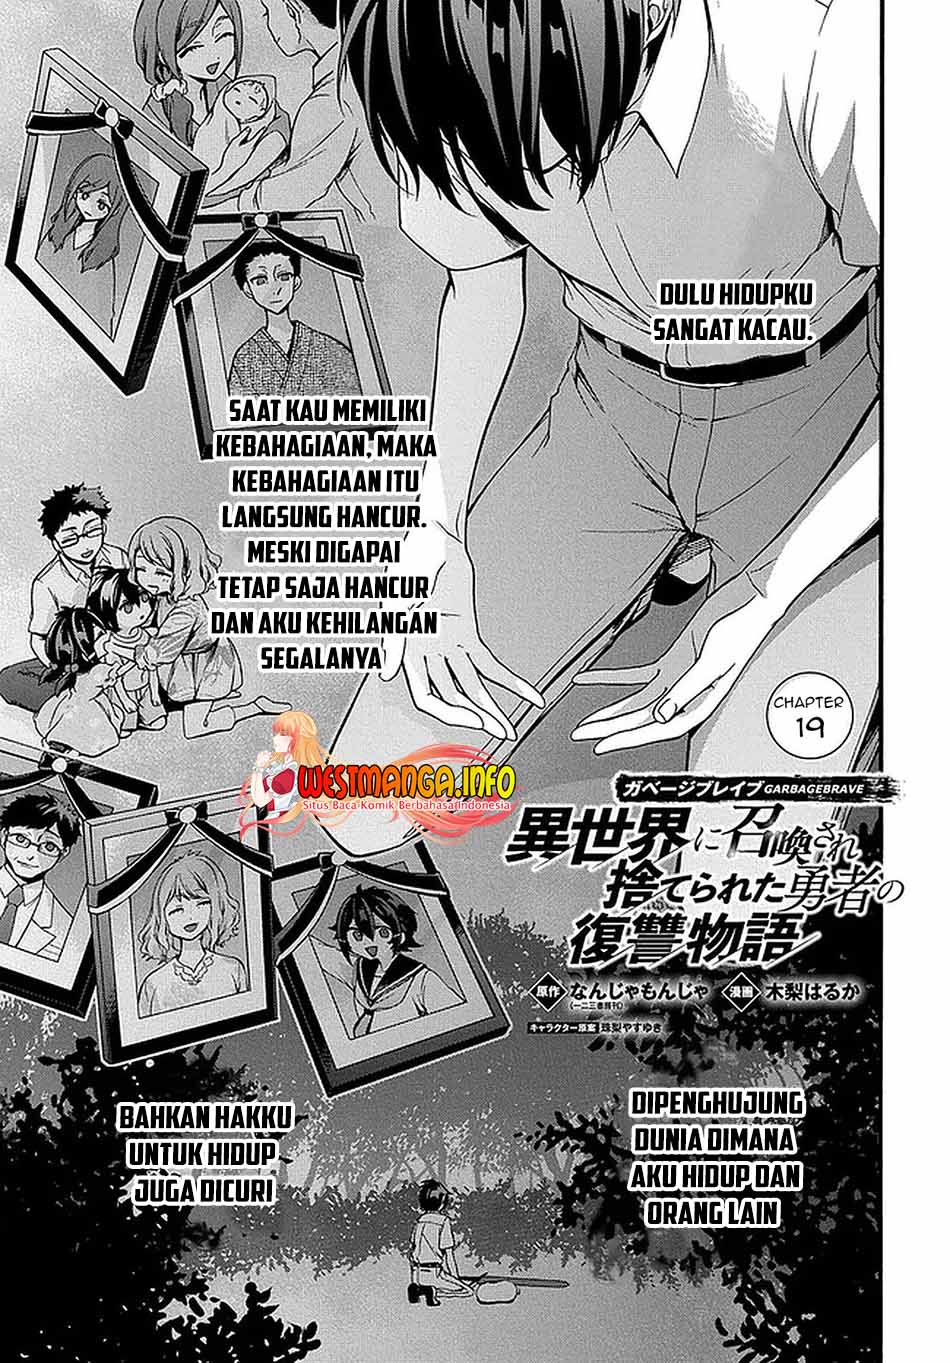 Garbage Brave: Isekai ni Shoukan Sare Suterareta Yuusha no Fukushuu Monogatari Chapter 19 2